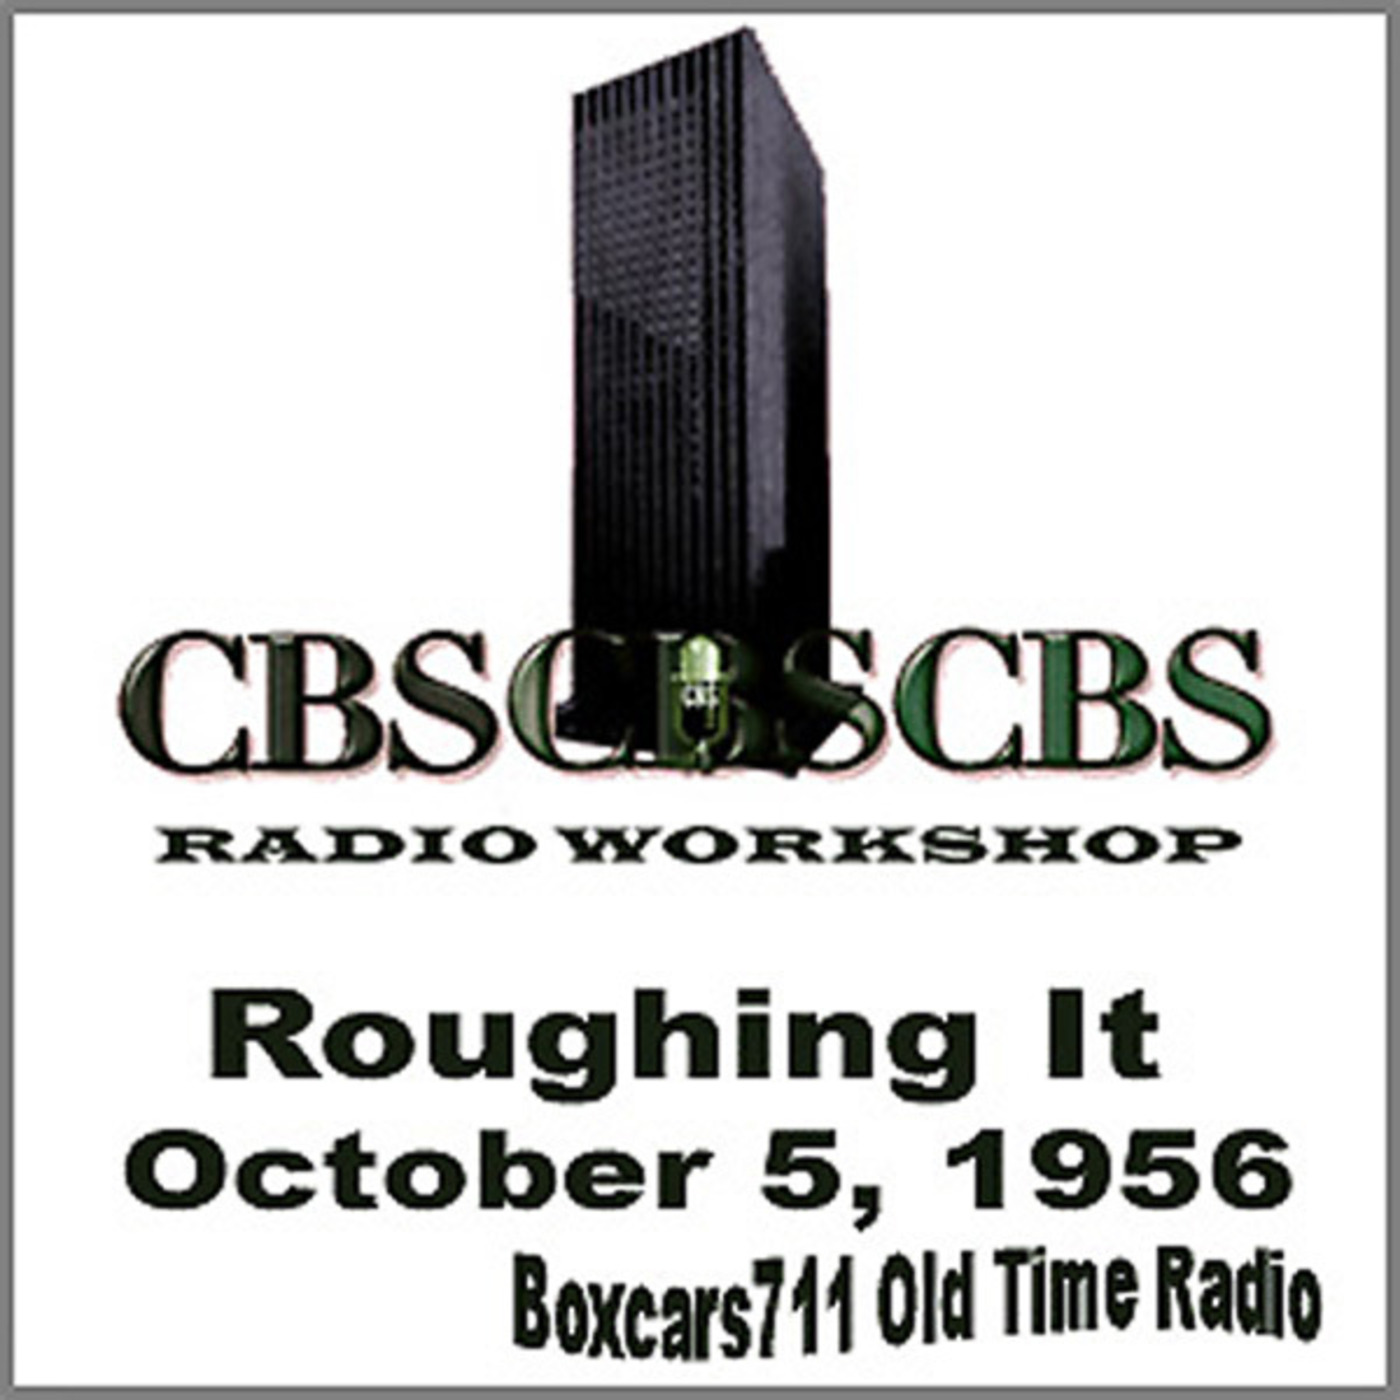 Episode 9553: CBS Radio Workshop - 